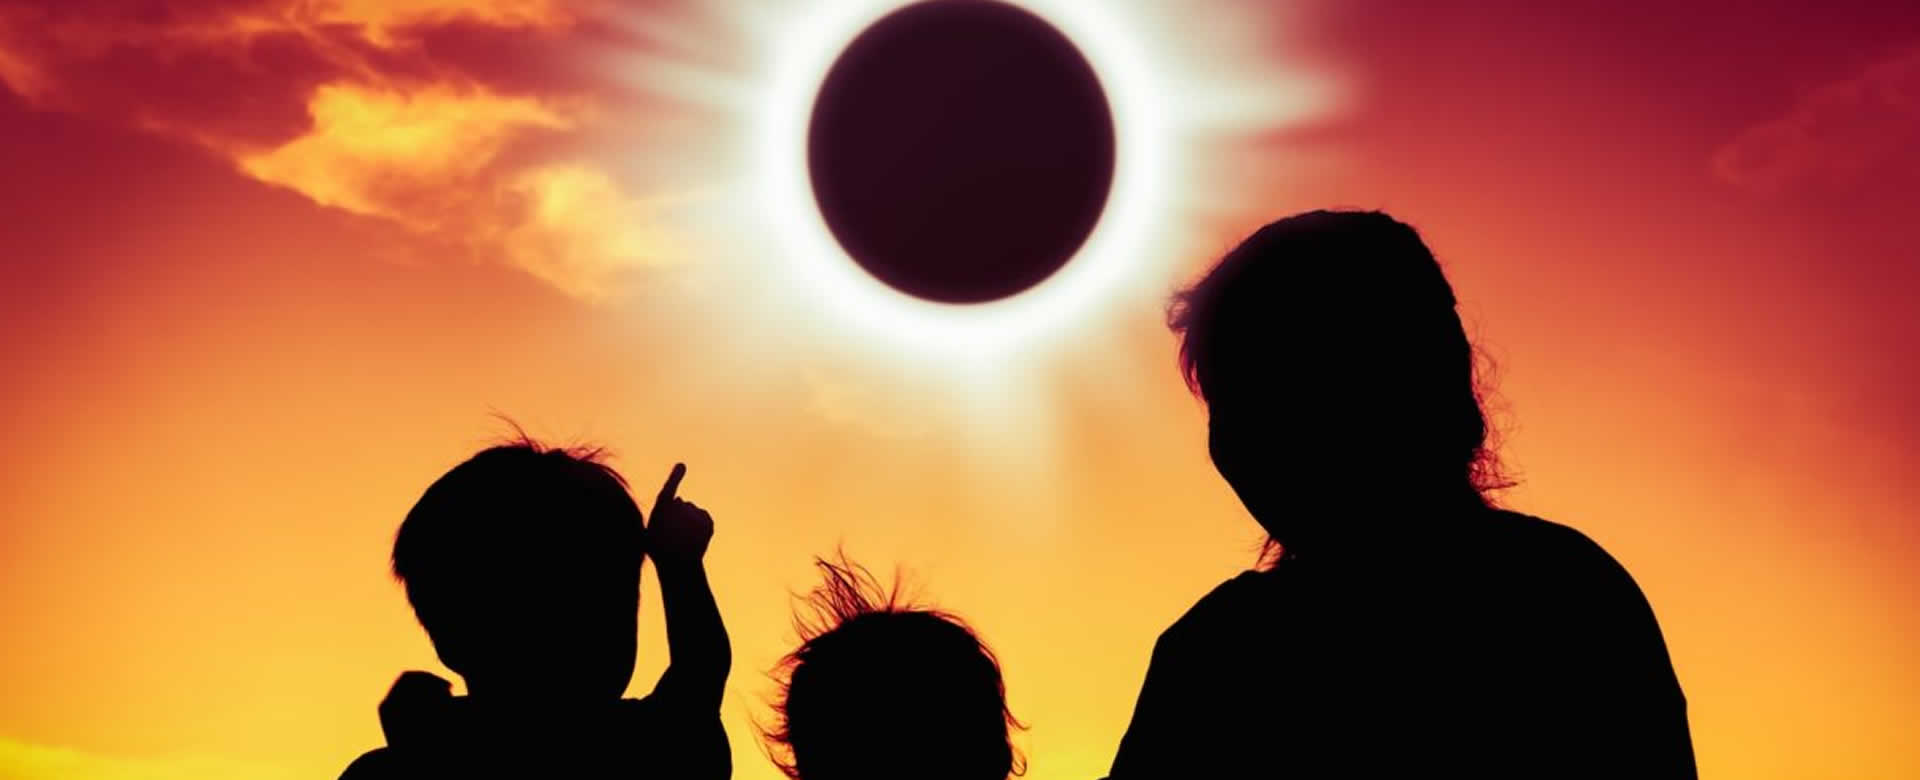 El primer eclipse superluna tendrá lugar el próximo 20 enero